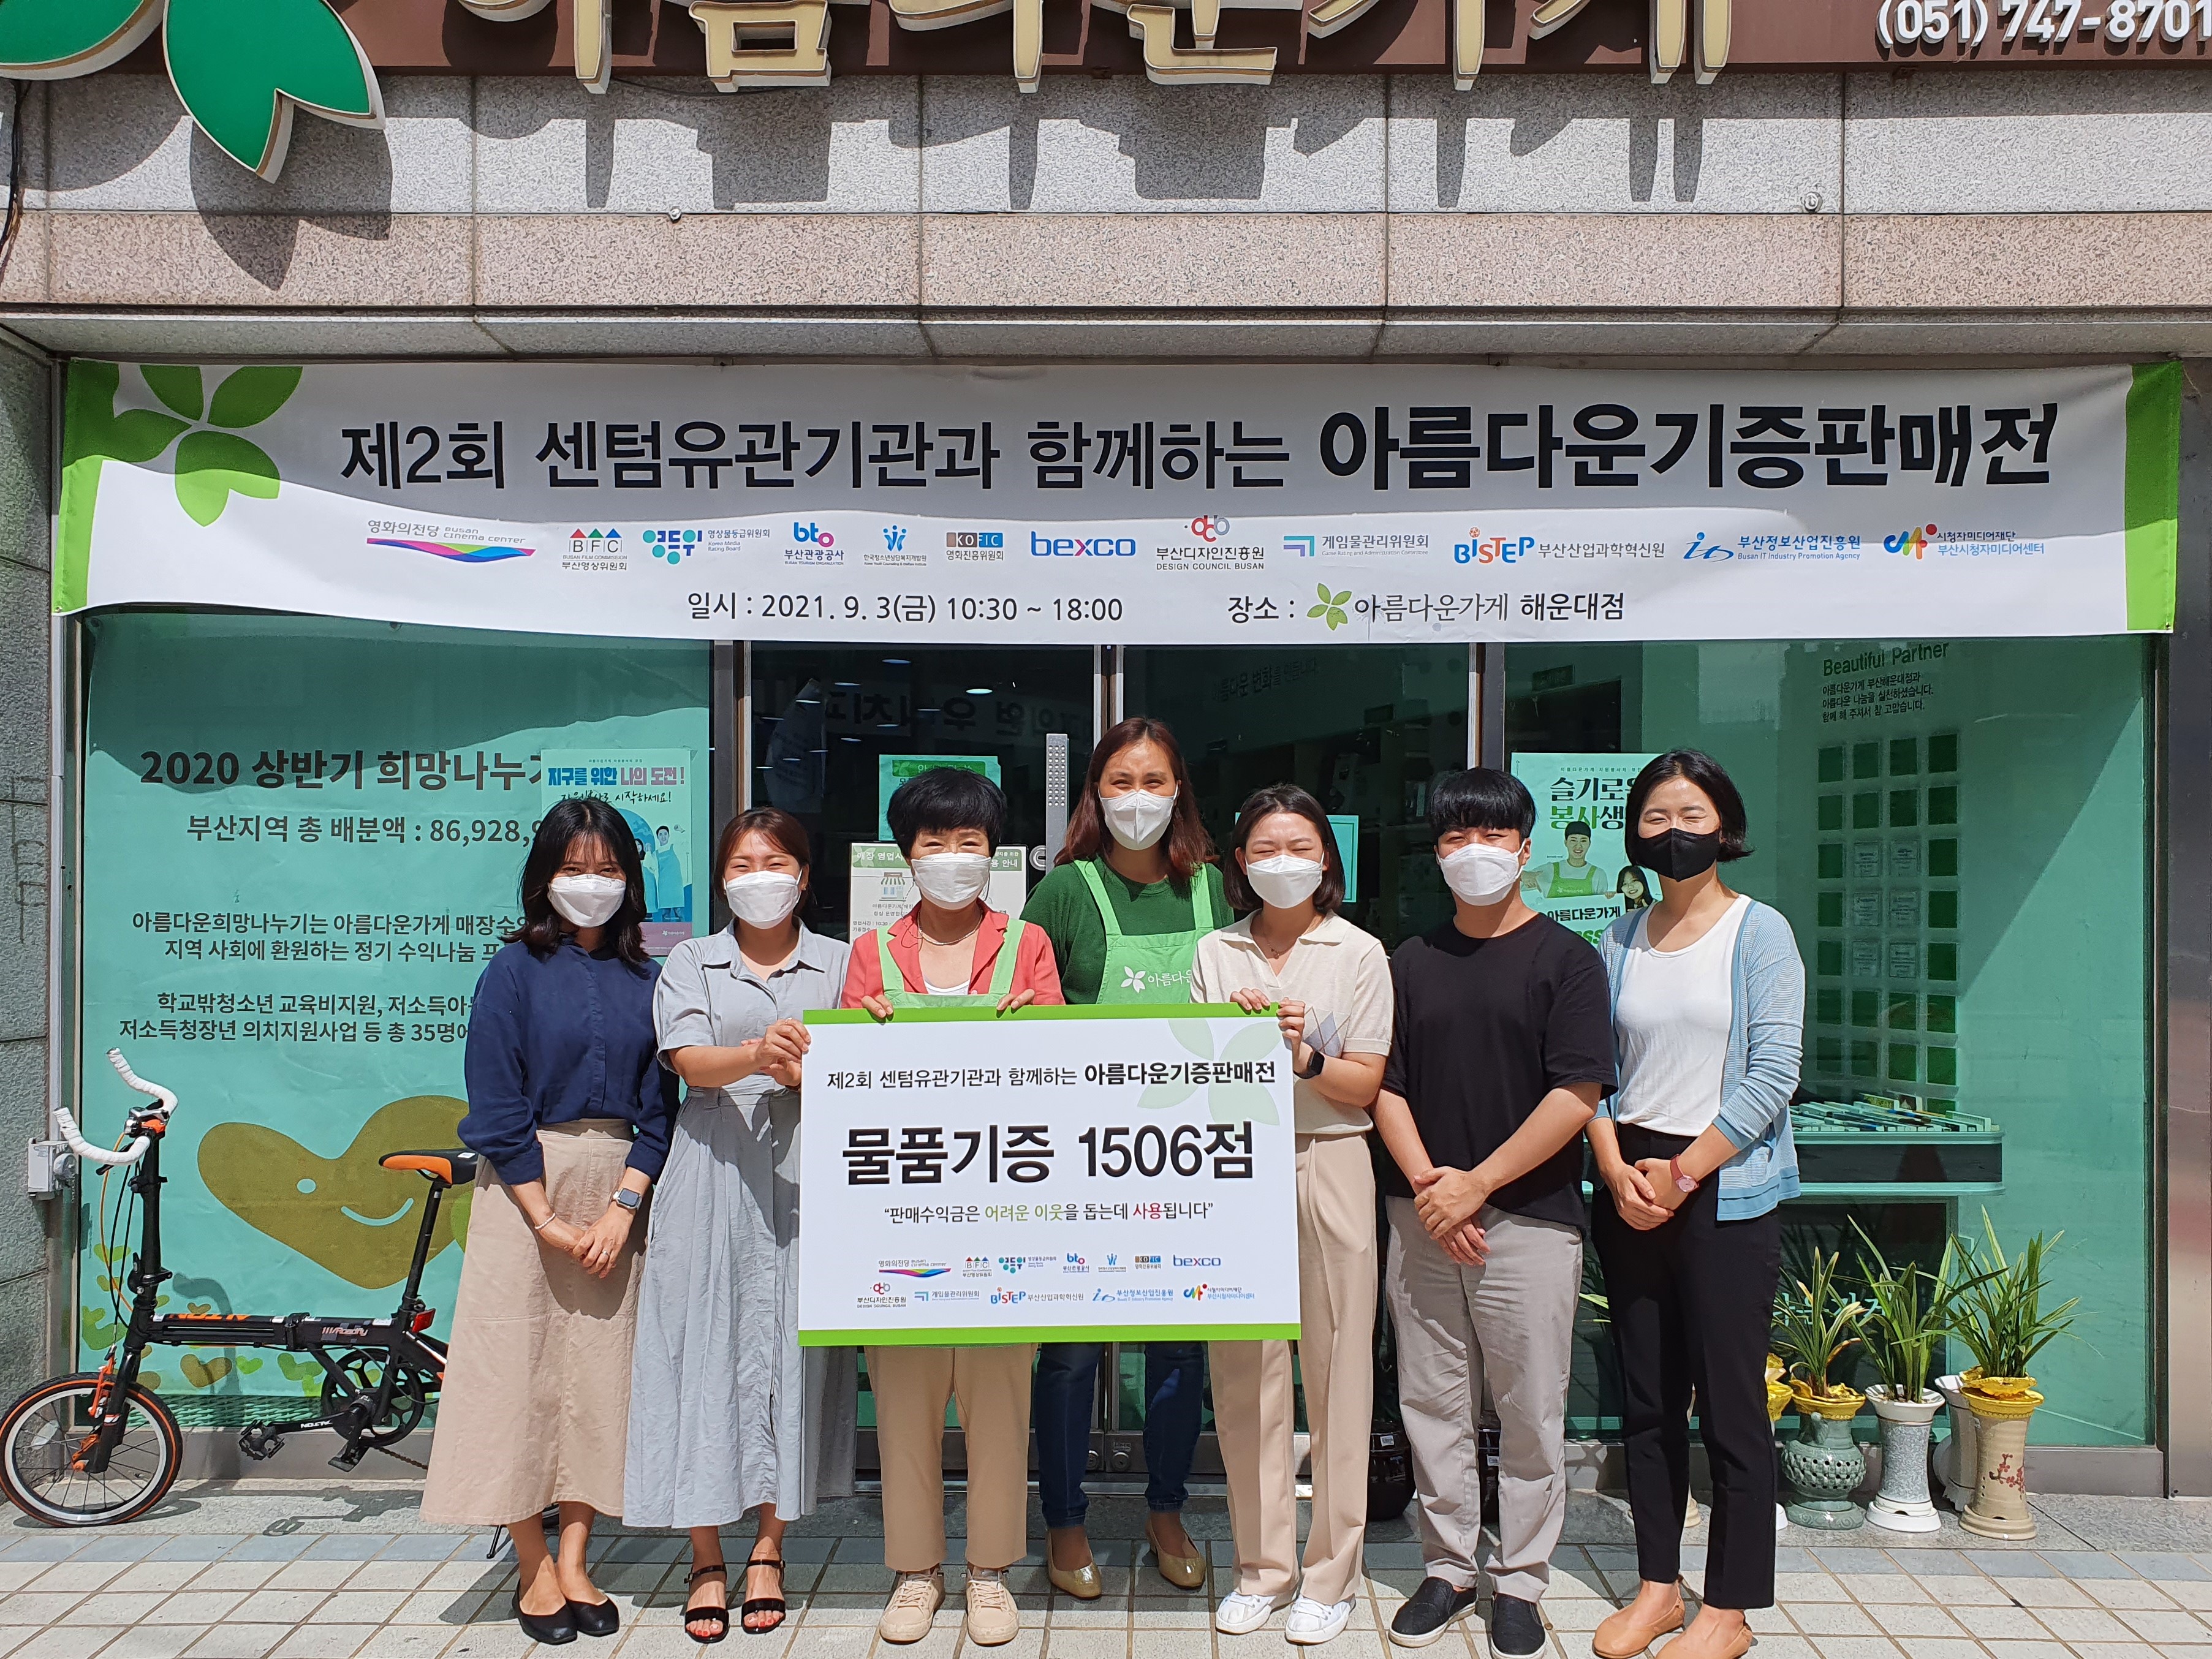 [사진] 한국청소년상담복지개발원_아름다운 가게 물품 기증 하단내용참조